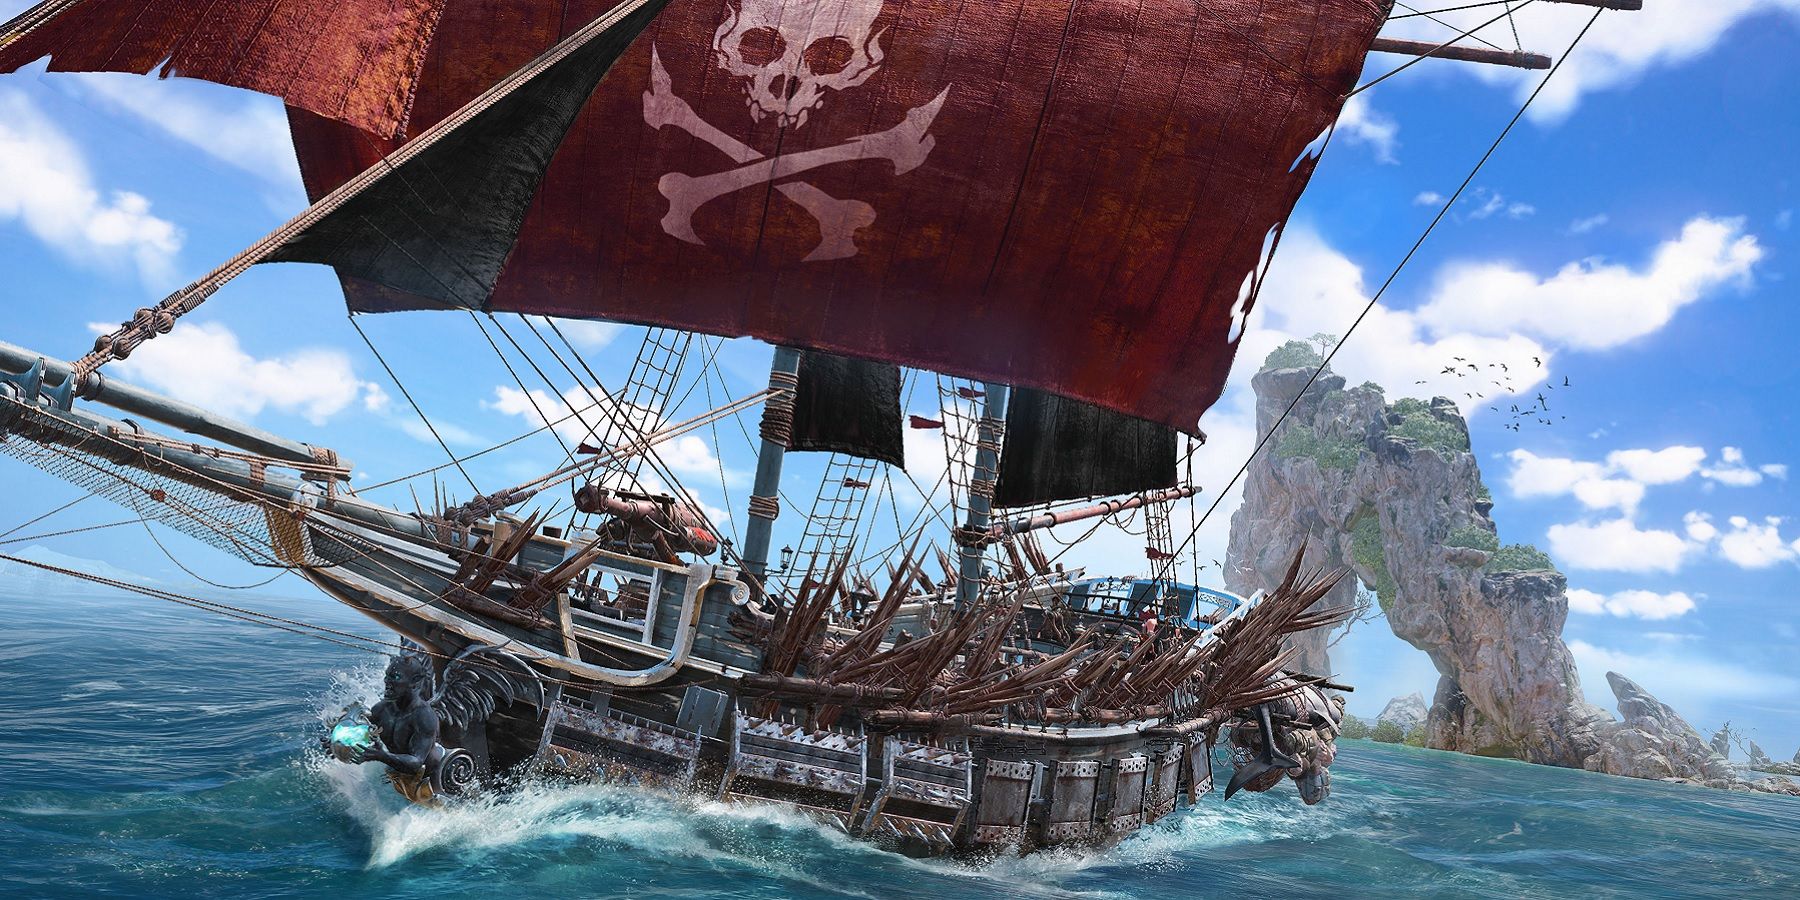 kapal bajak laut tengkorak dan tulang